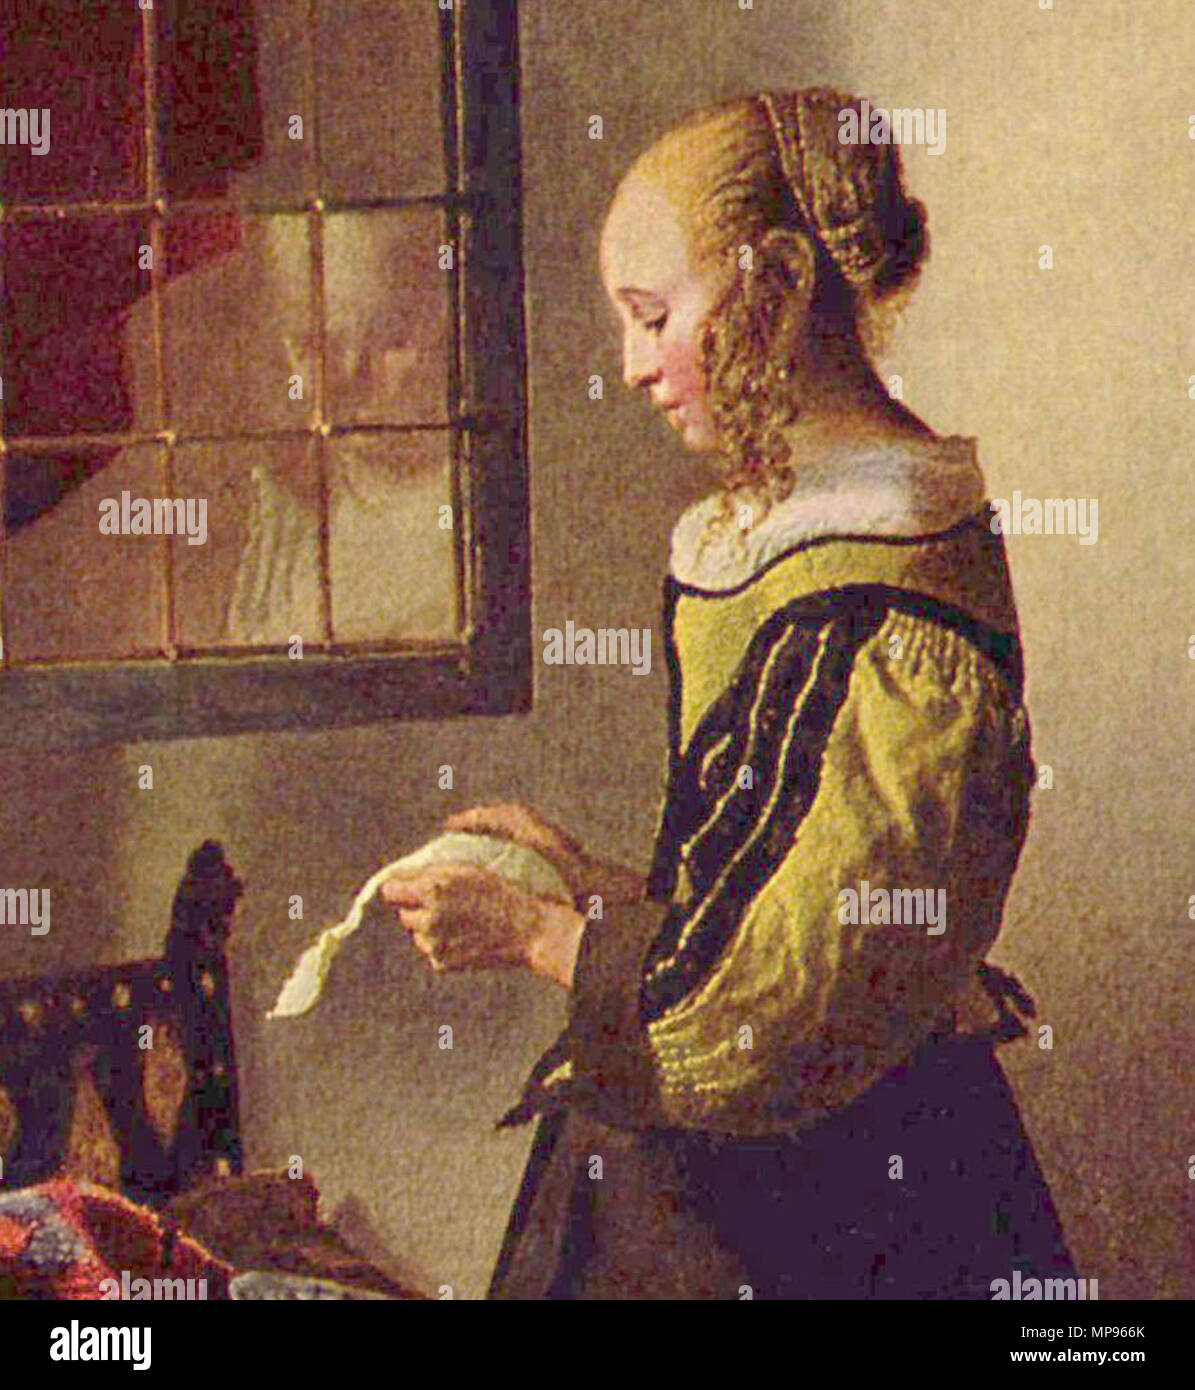 English: Brieflesendes Mädchen am offenen Fenster, Detail Englisch: Mädchen  lesen einen Brief an ein offenes Fenster,